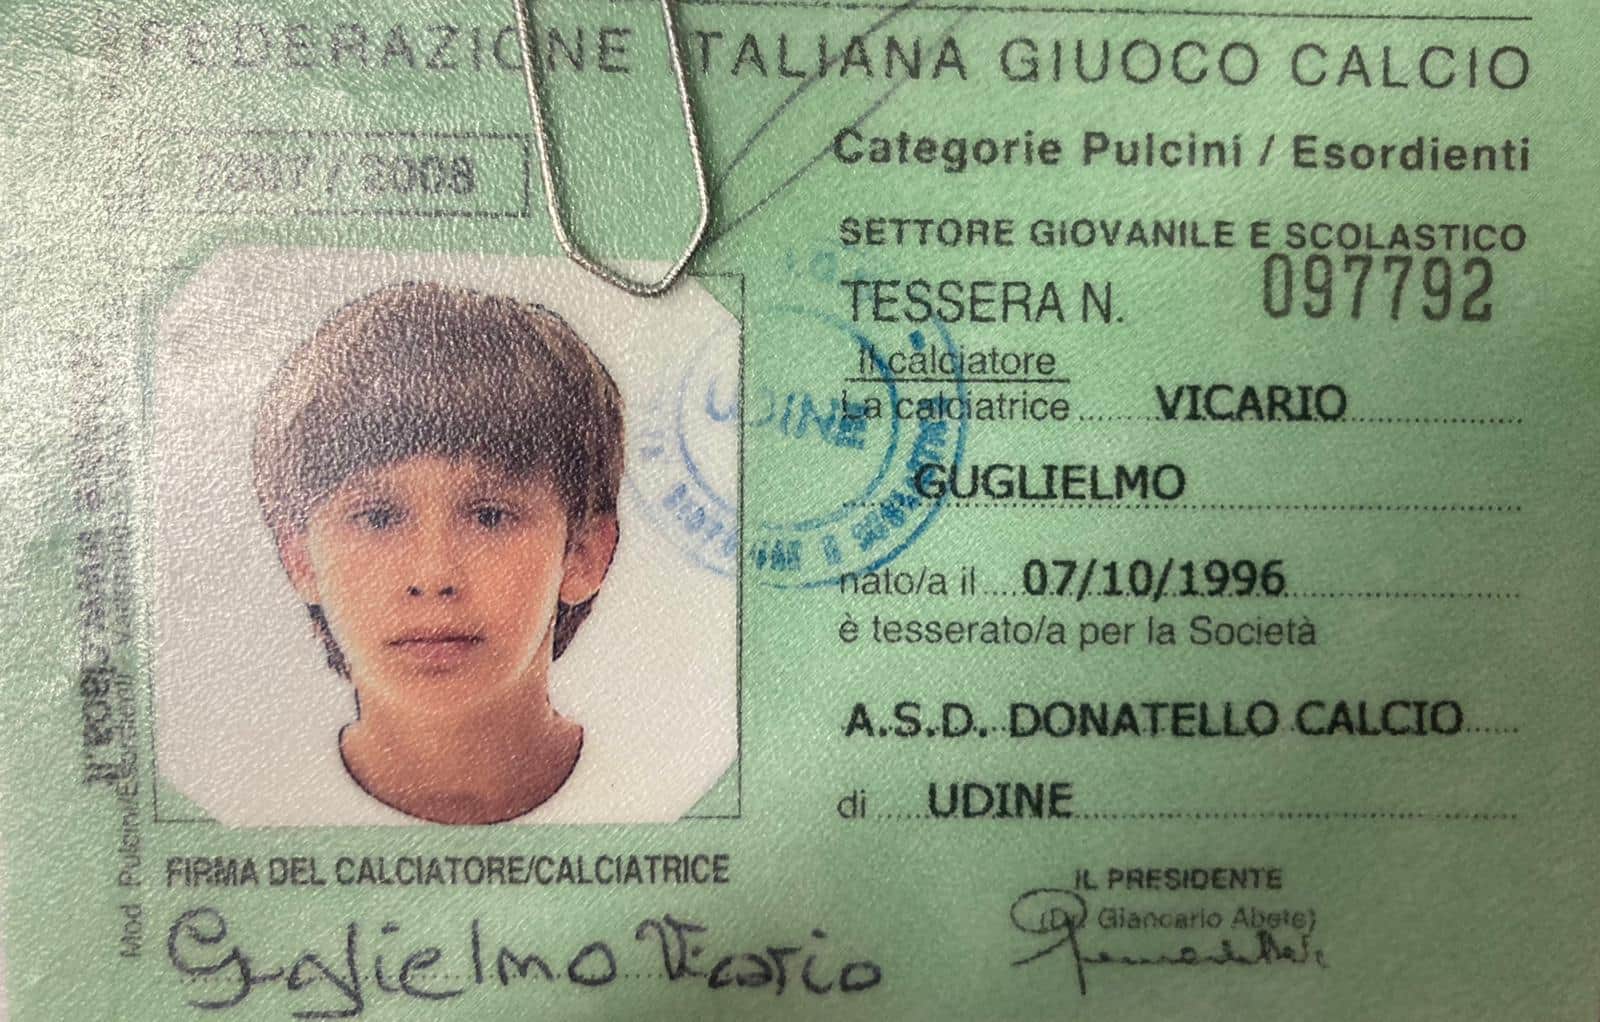 Guglielmo Vicario è nato il 7 ottobre 1996 (età 24 anni)